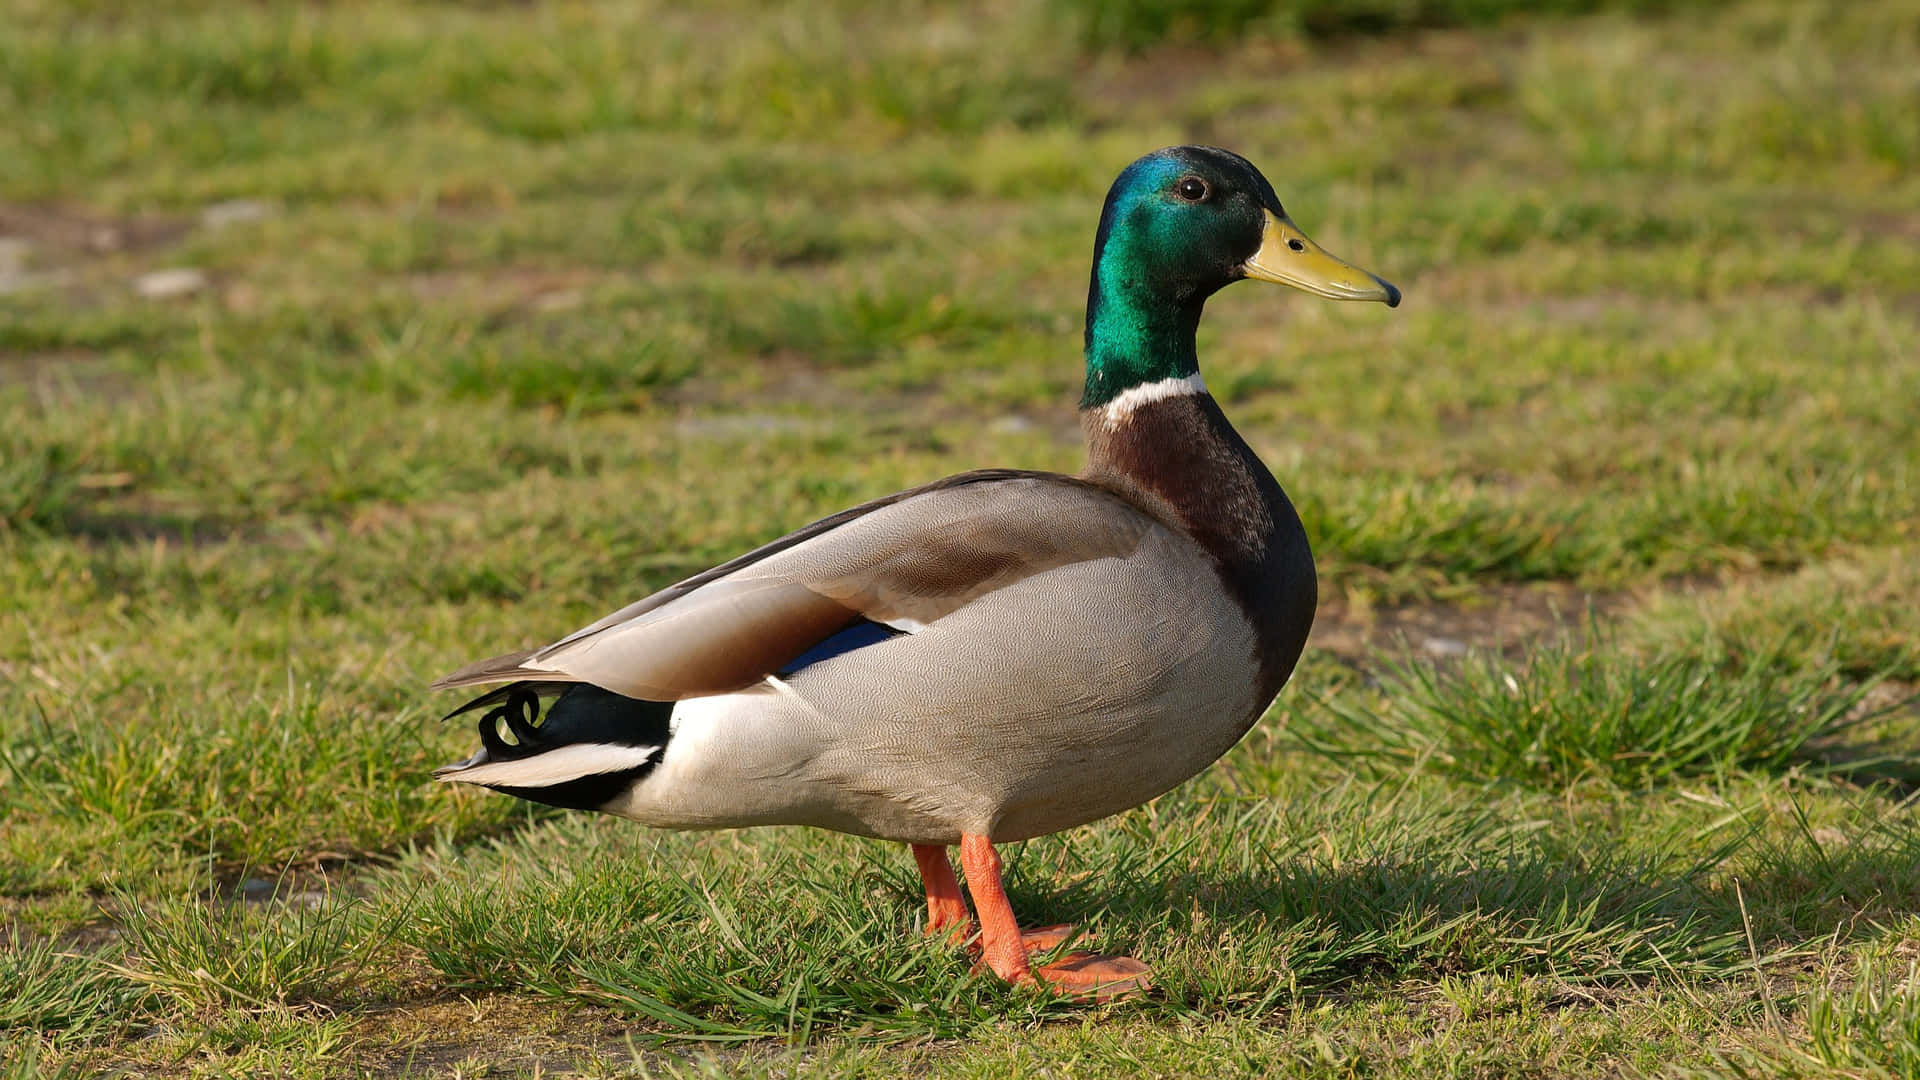 Mallard Duck On Grass.jpg Wallpaper